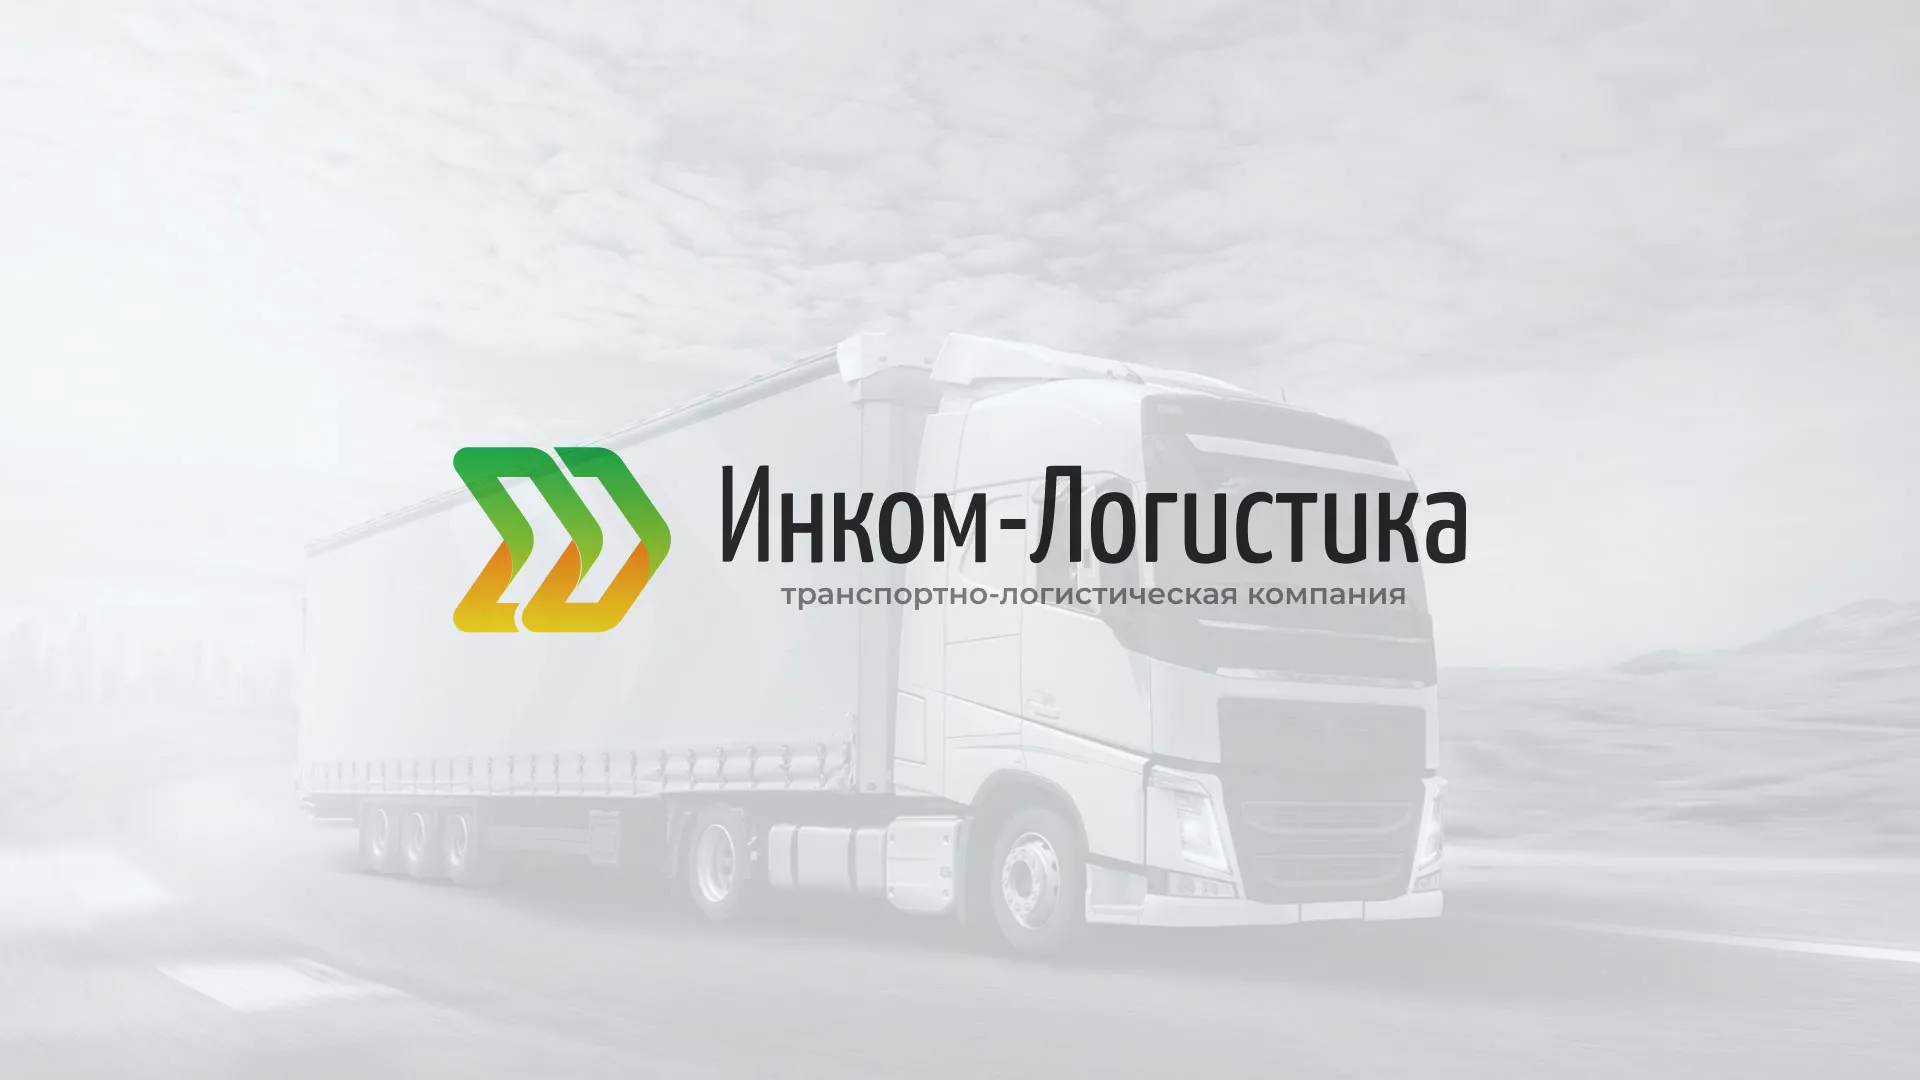 Разработка логотипа и сайта компании «Инком-Логистика» в Весьегонске